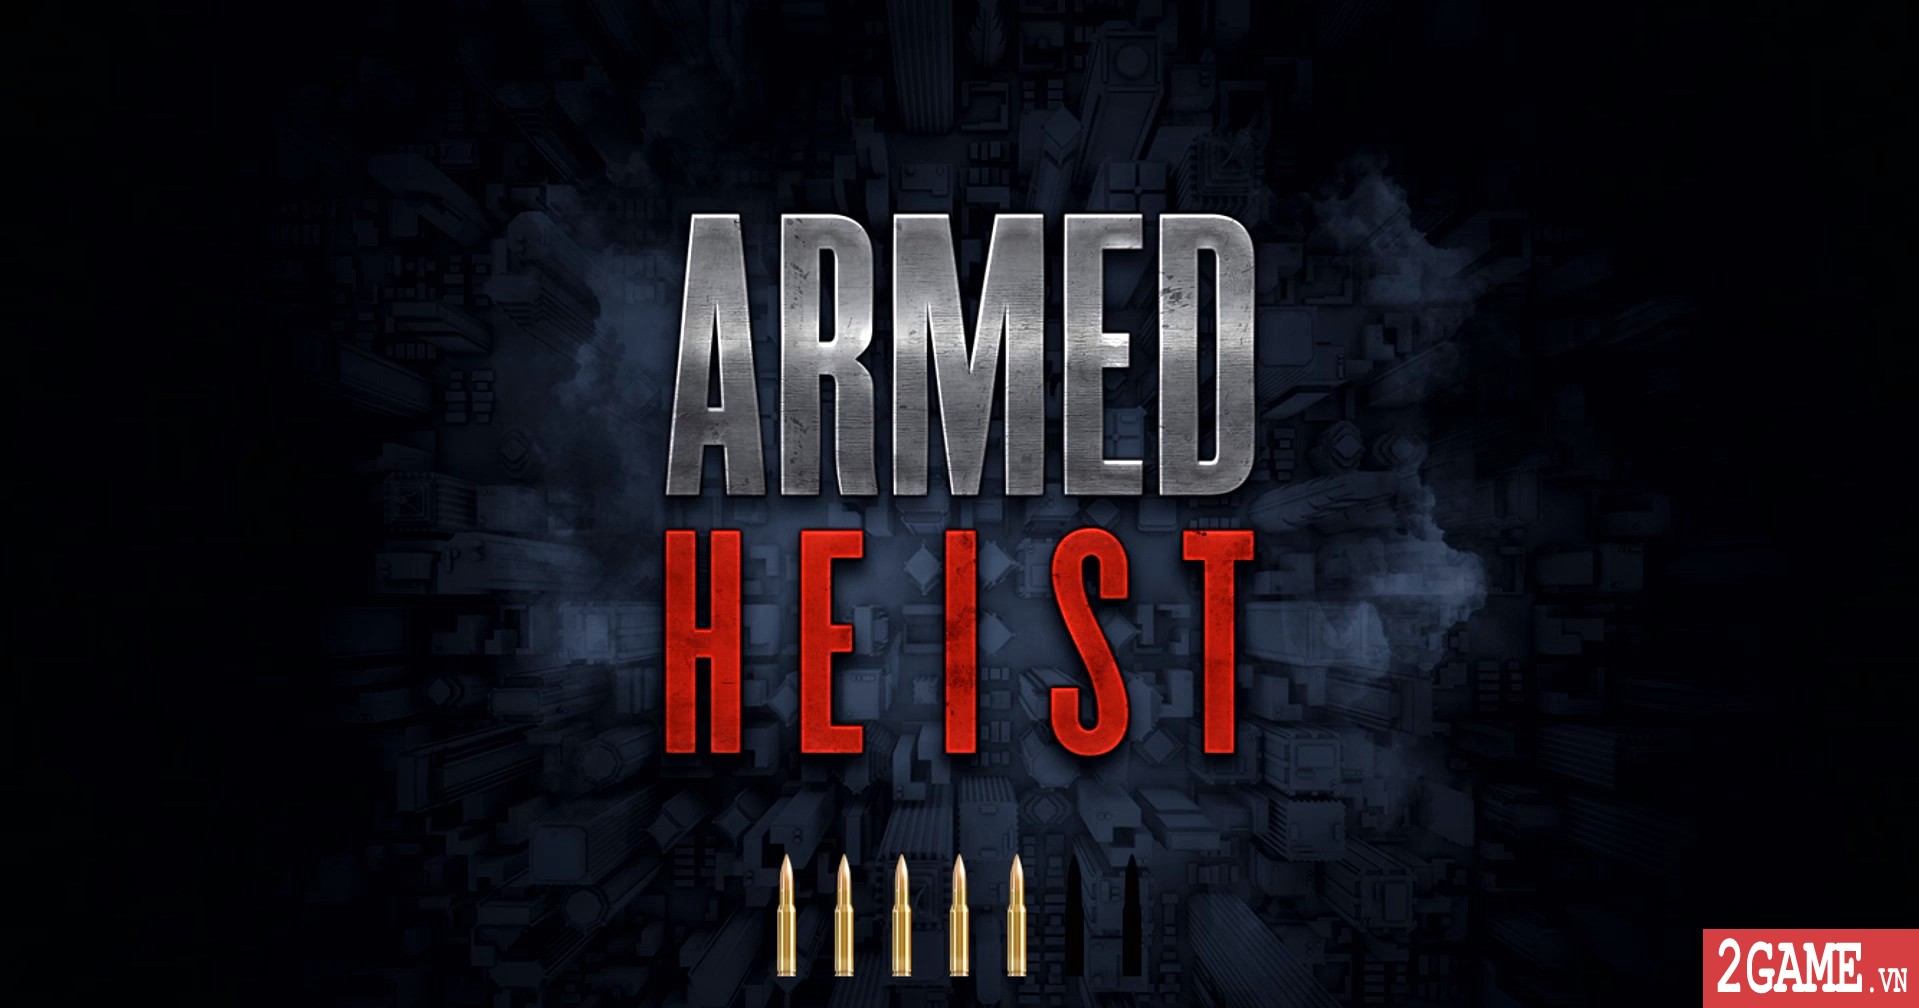 Armed Heist – Game mobile cho phép người chơi bắn súng cướp nhà băng đầy táo bạo